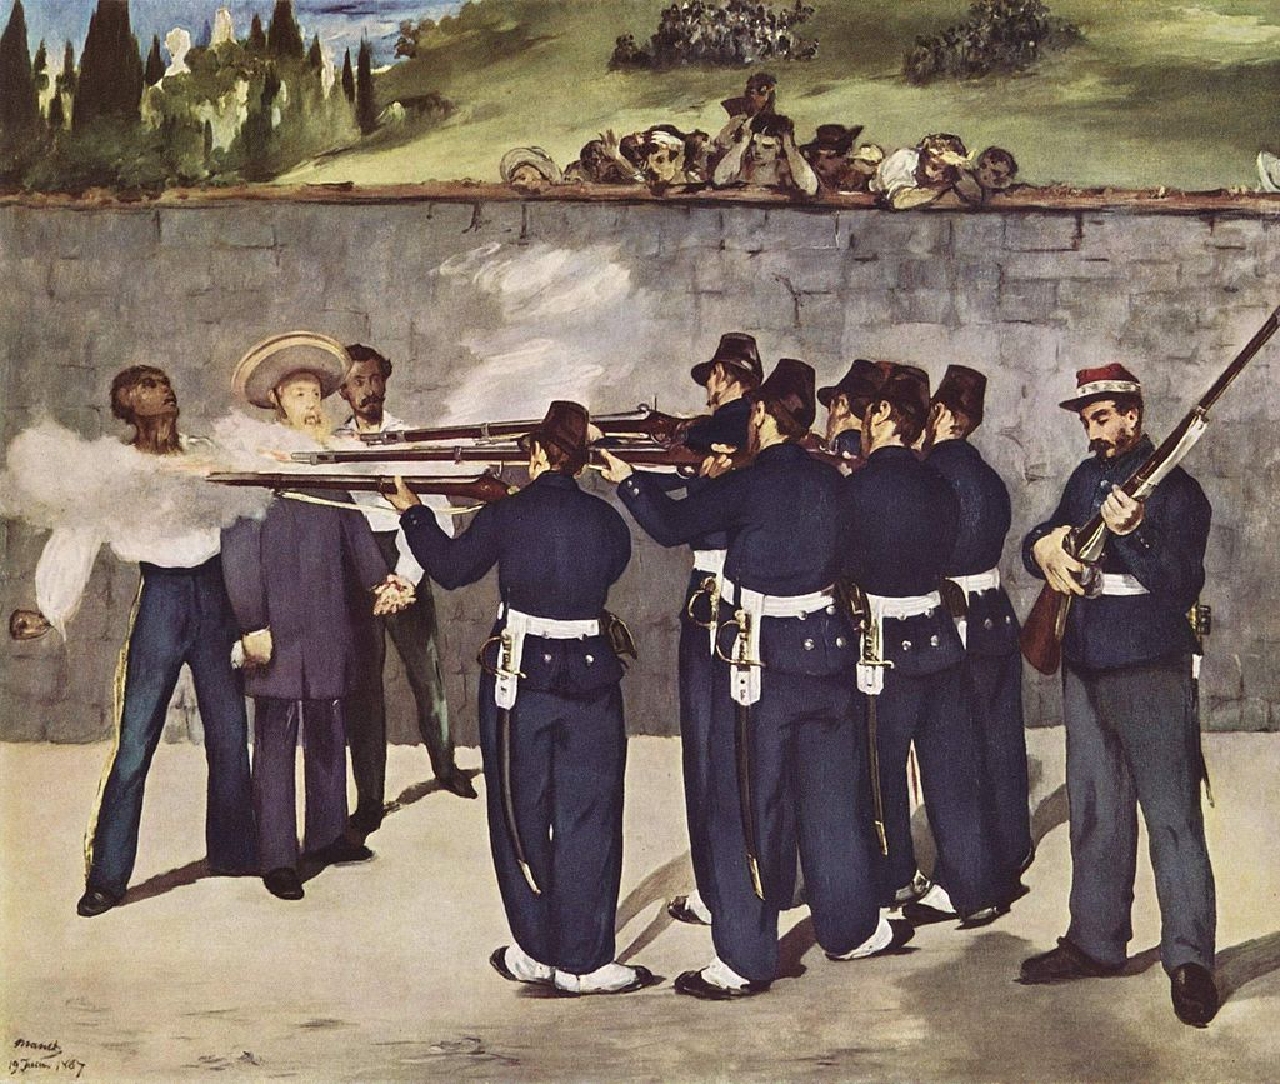 La ejecución del emperador Maximiliano, Édouard Manet, 1868